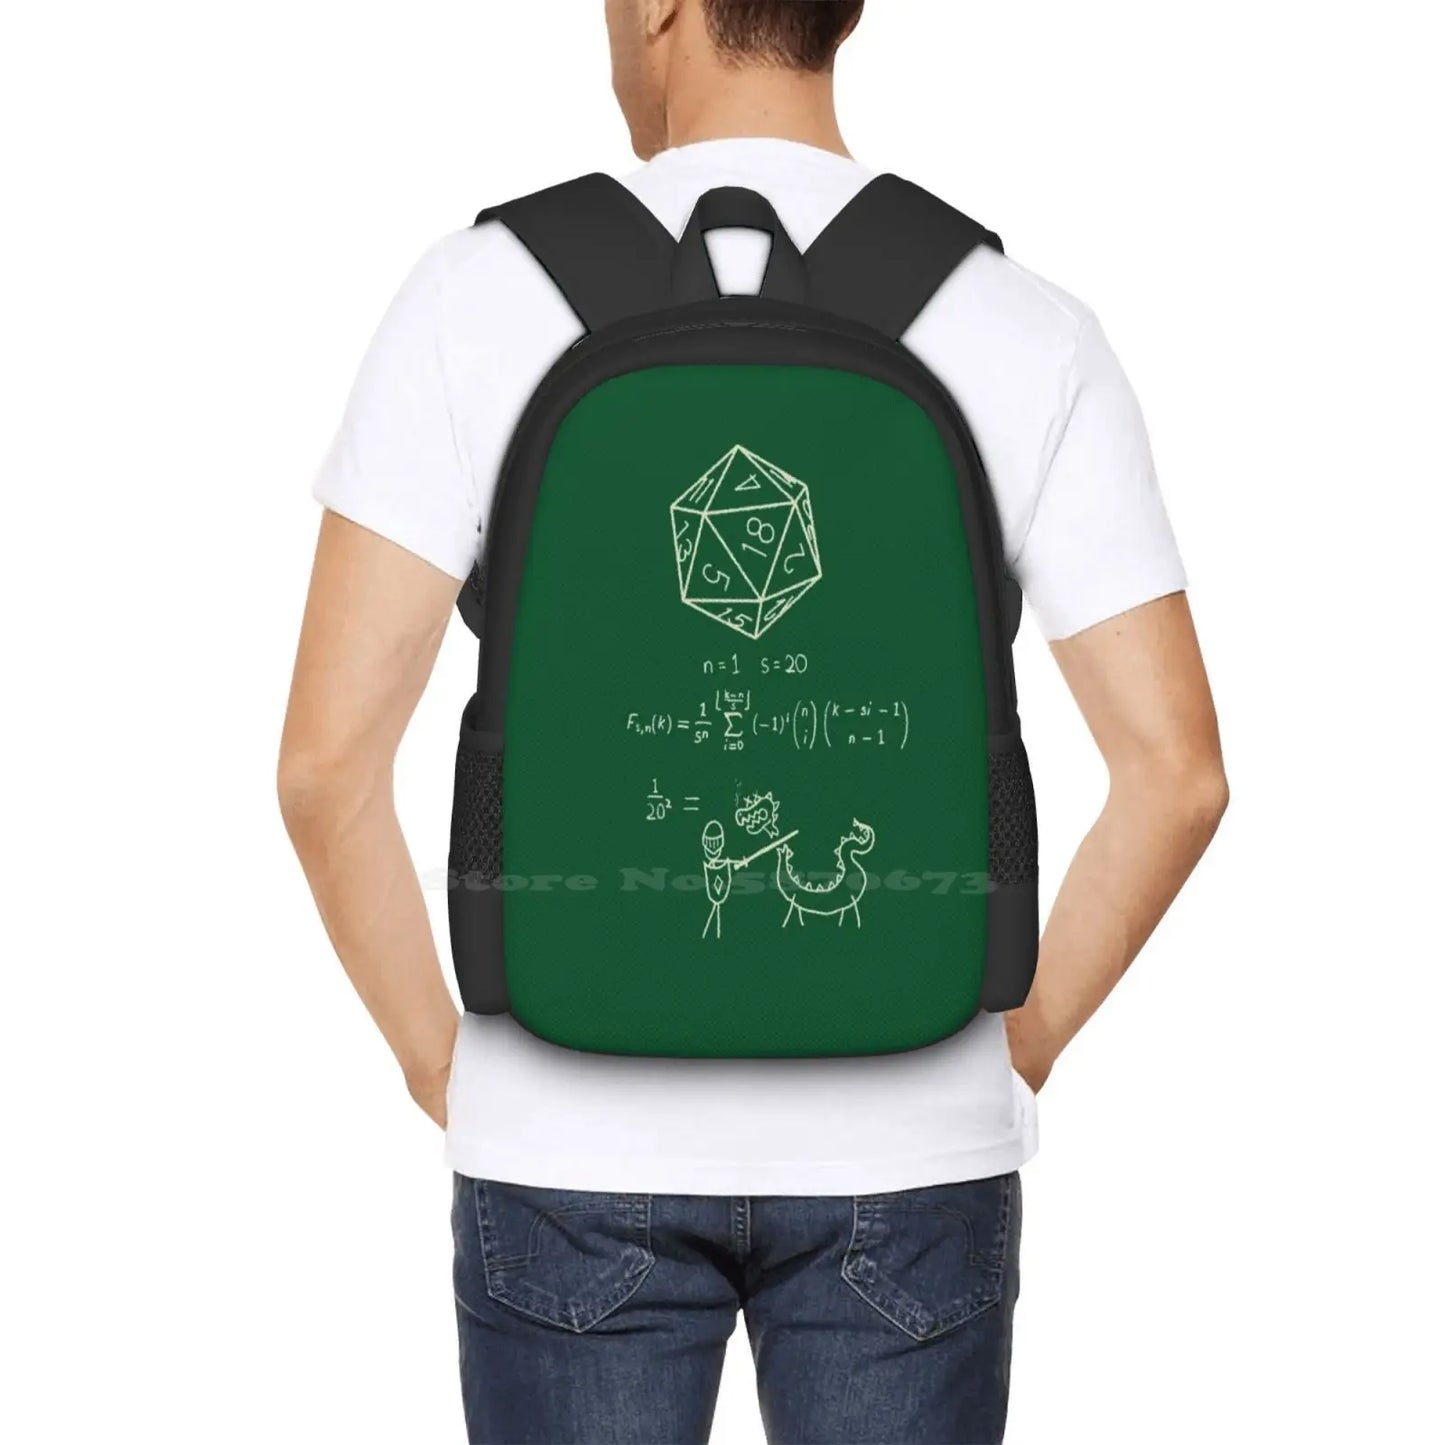 La ciencia de los dados de 20 caras. Bolsas escolares viaje portátil mochila D20 ciencia matemáticas dados Dnd y dragones